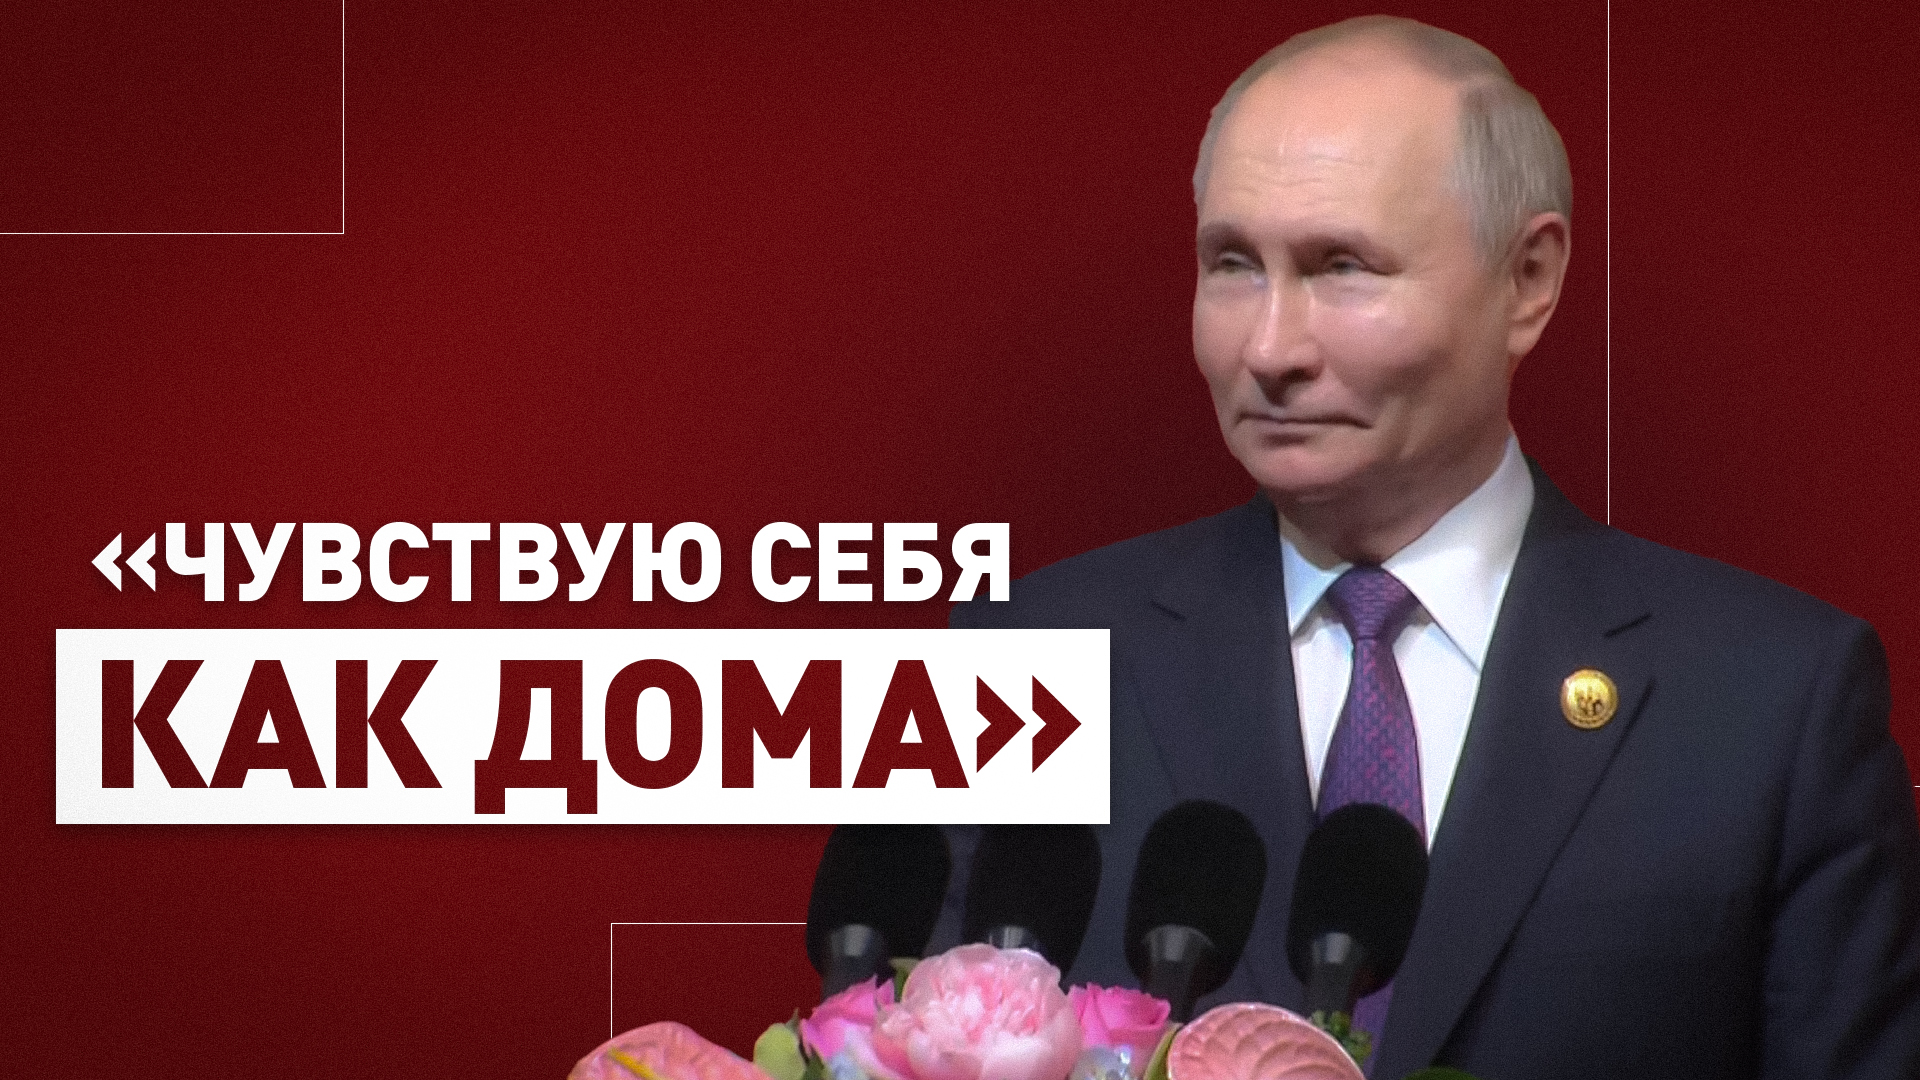 «Решил, что здесь все по-русски понимают»: Путин пошутил во время своей речи в Китае